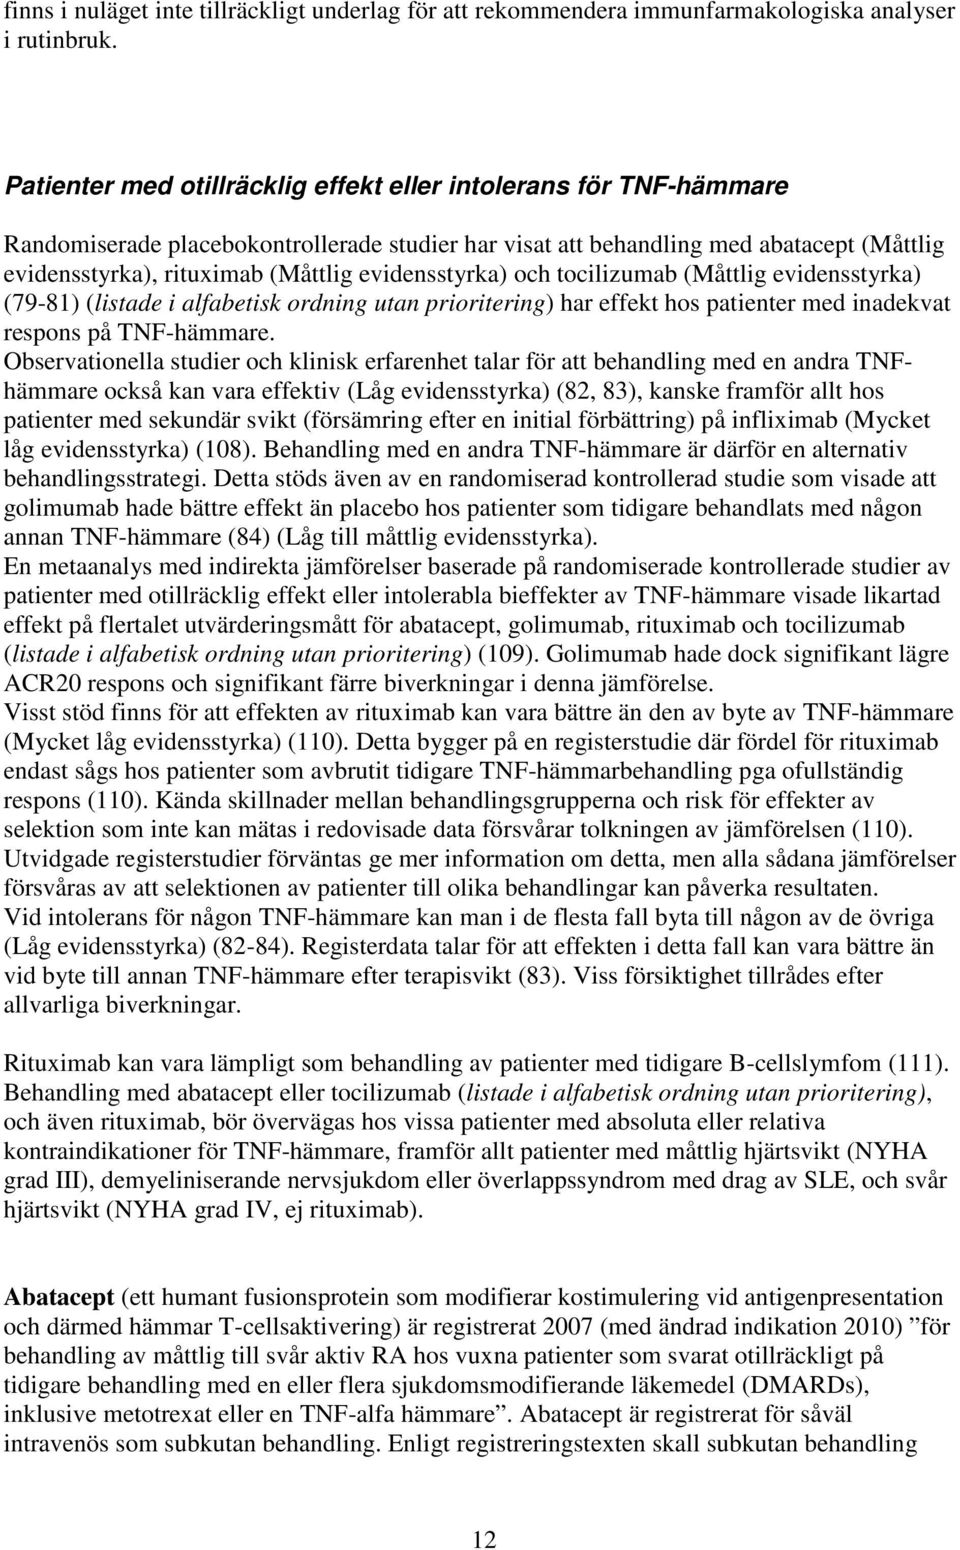 evidensstyrka) och tocilizumab (Måttlig evidensstyrka) (79-81) (listade i alfabetisk ordning utan prioritering) har effekt hos patienter med inadekvat respons på TNF-hämmare.